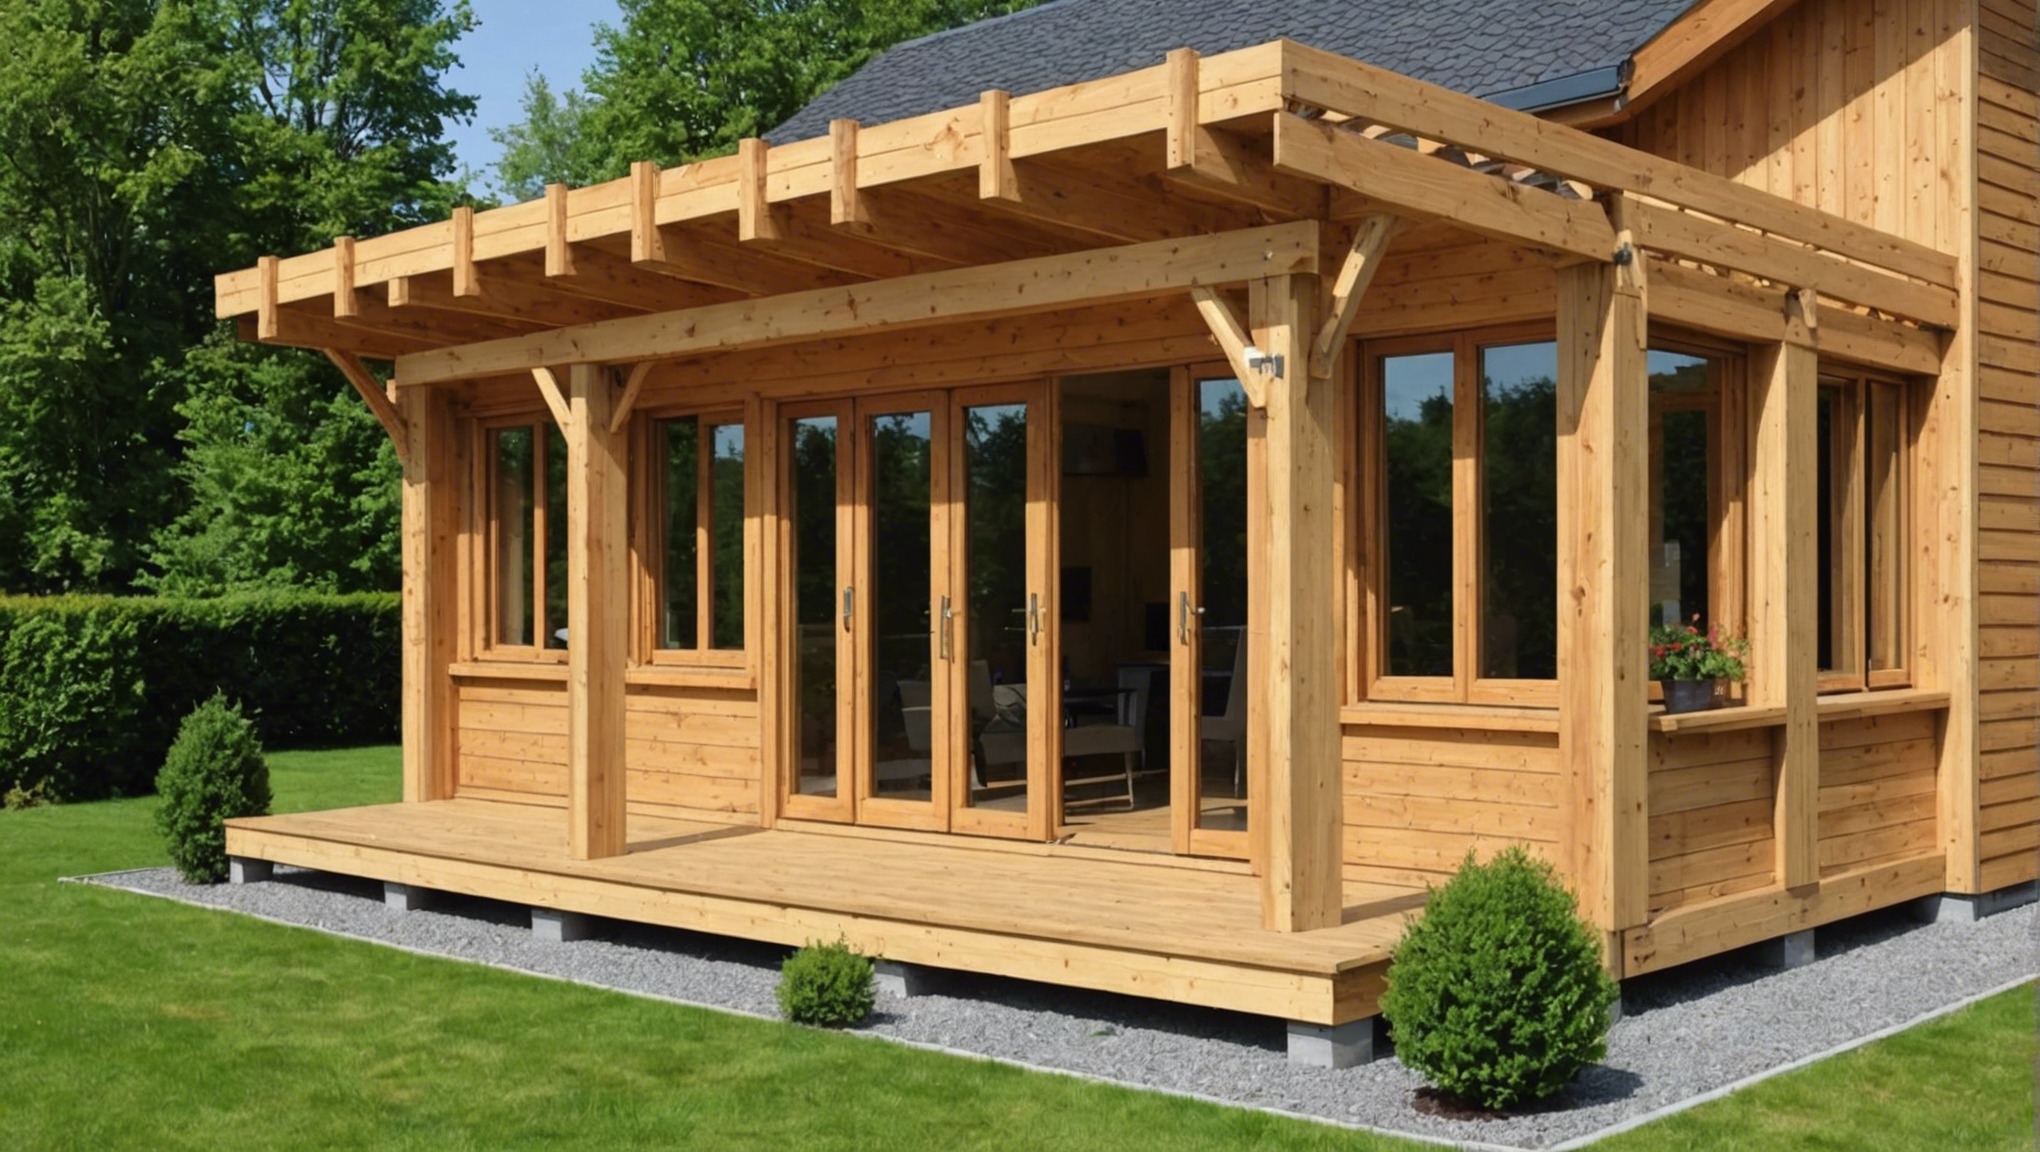 découvrez comment construire une superbe clôture en bois pour embellir votre maison avec nos conseils pratiques et nos astuces de bricolage.